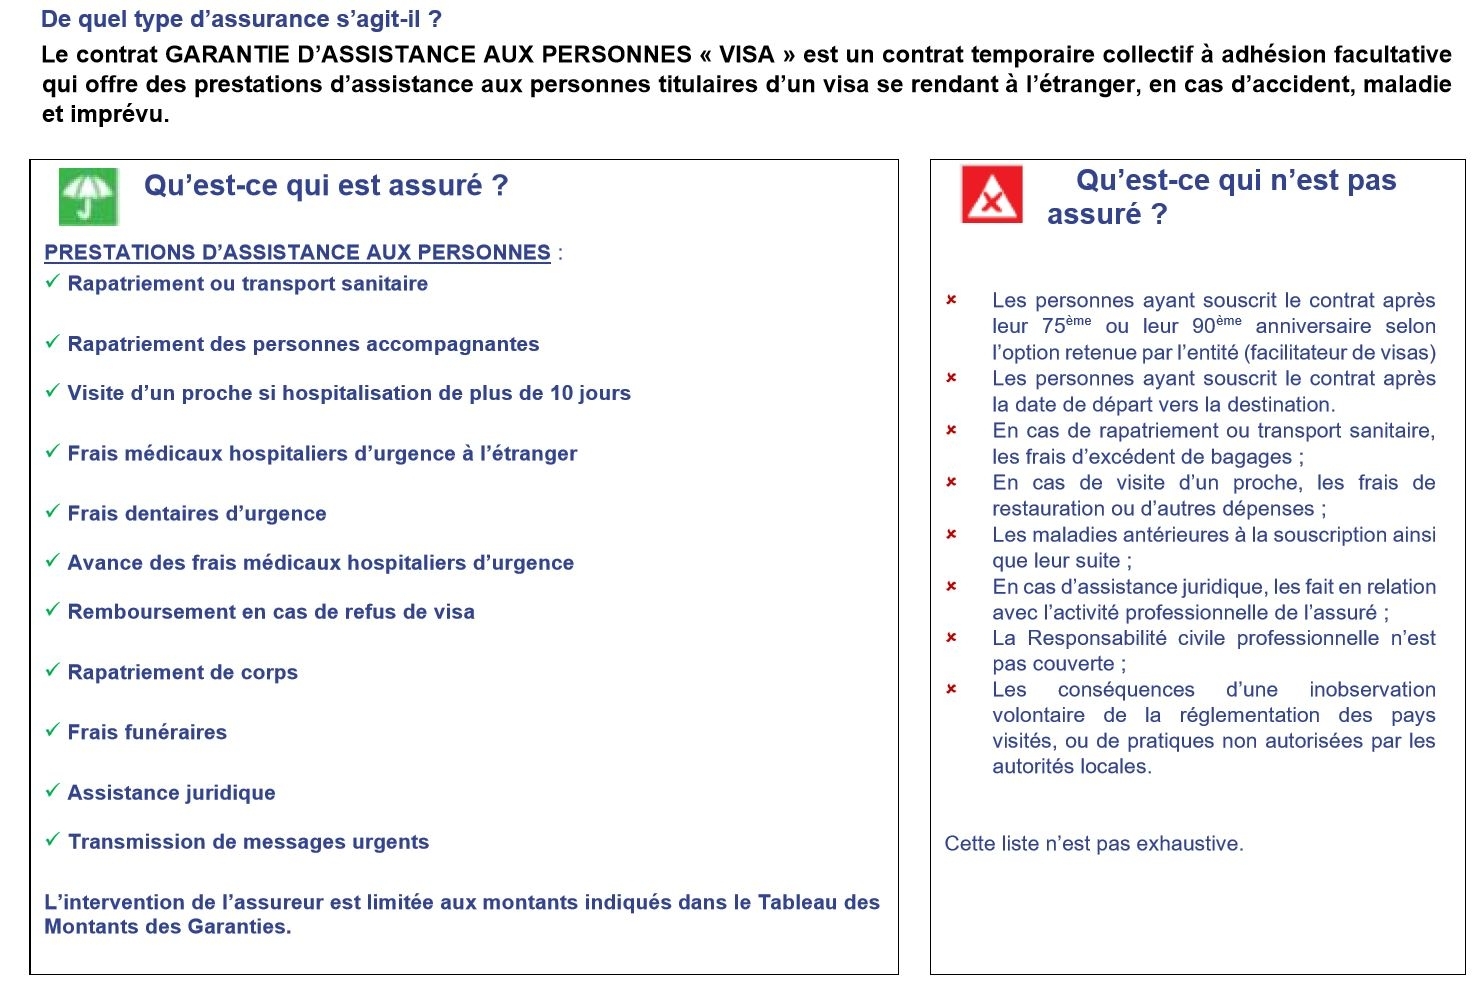 Assurance voyage Europe - Visa Schengen